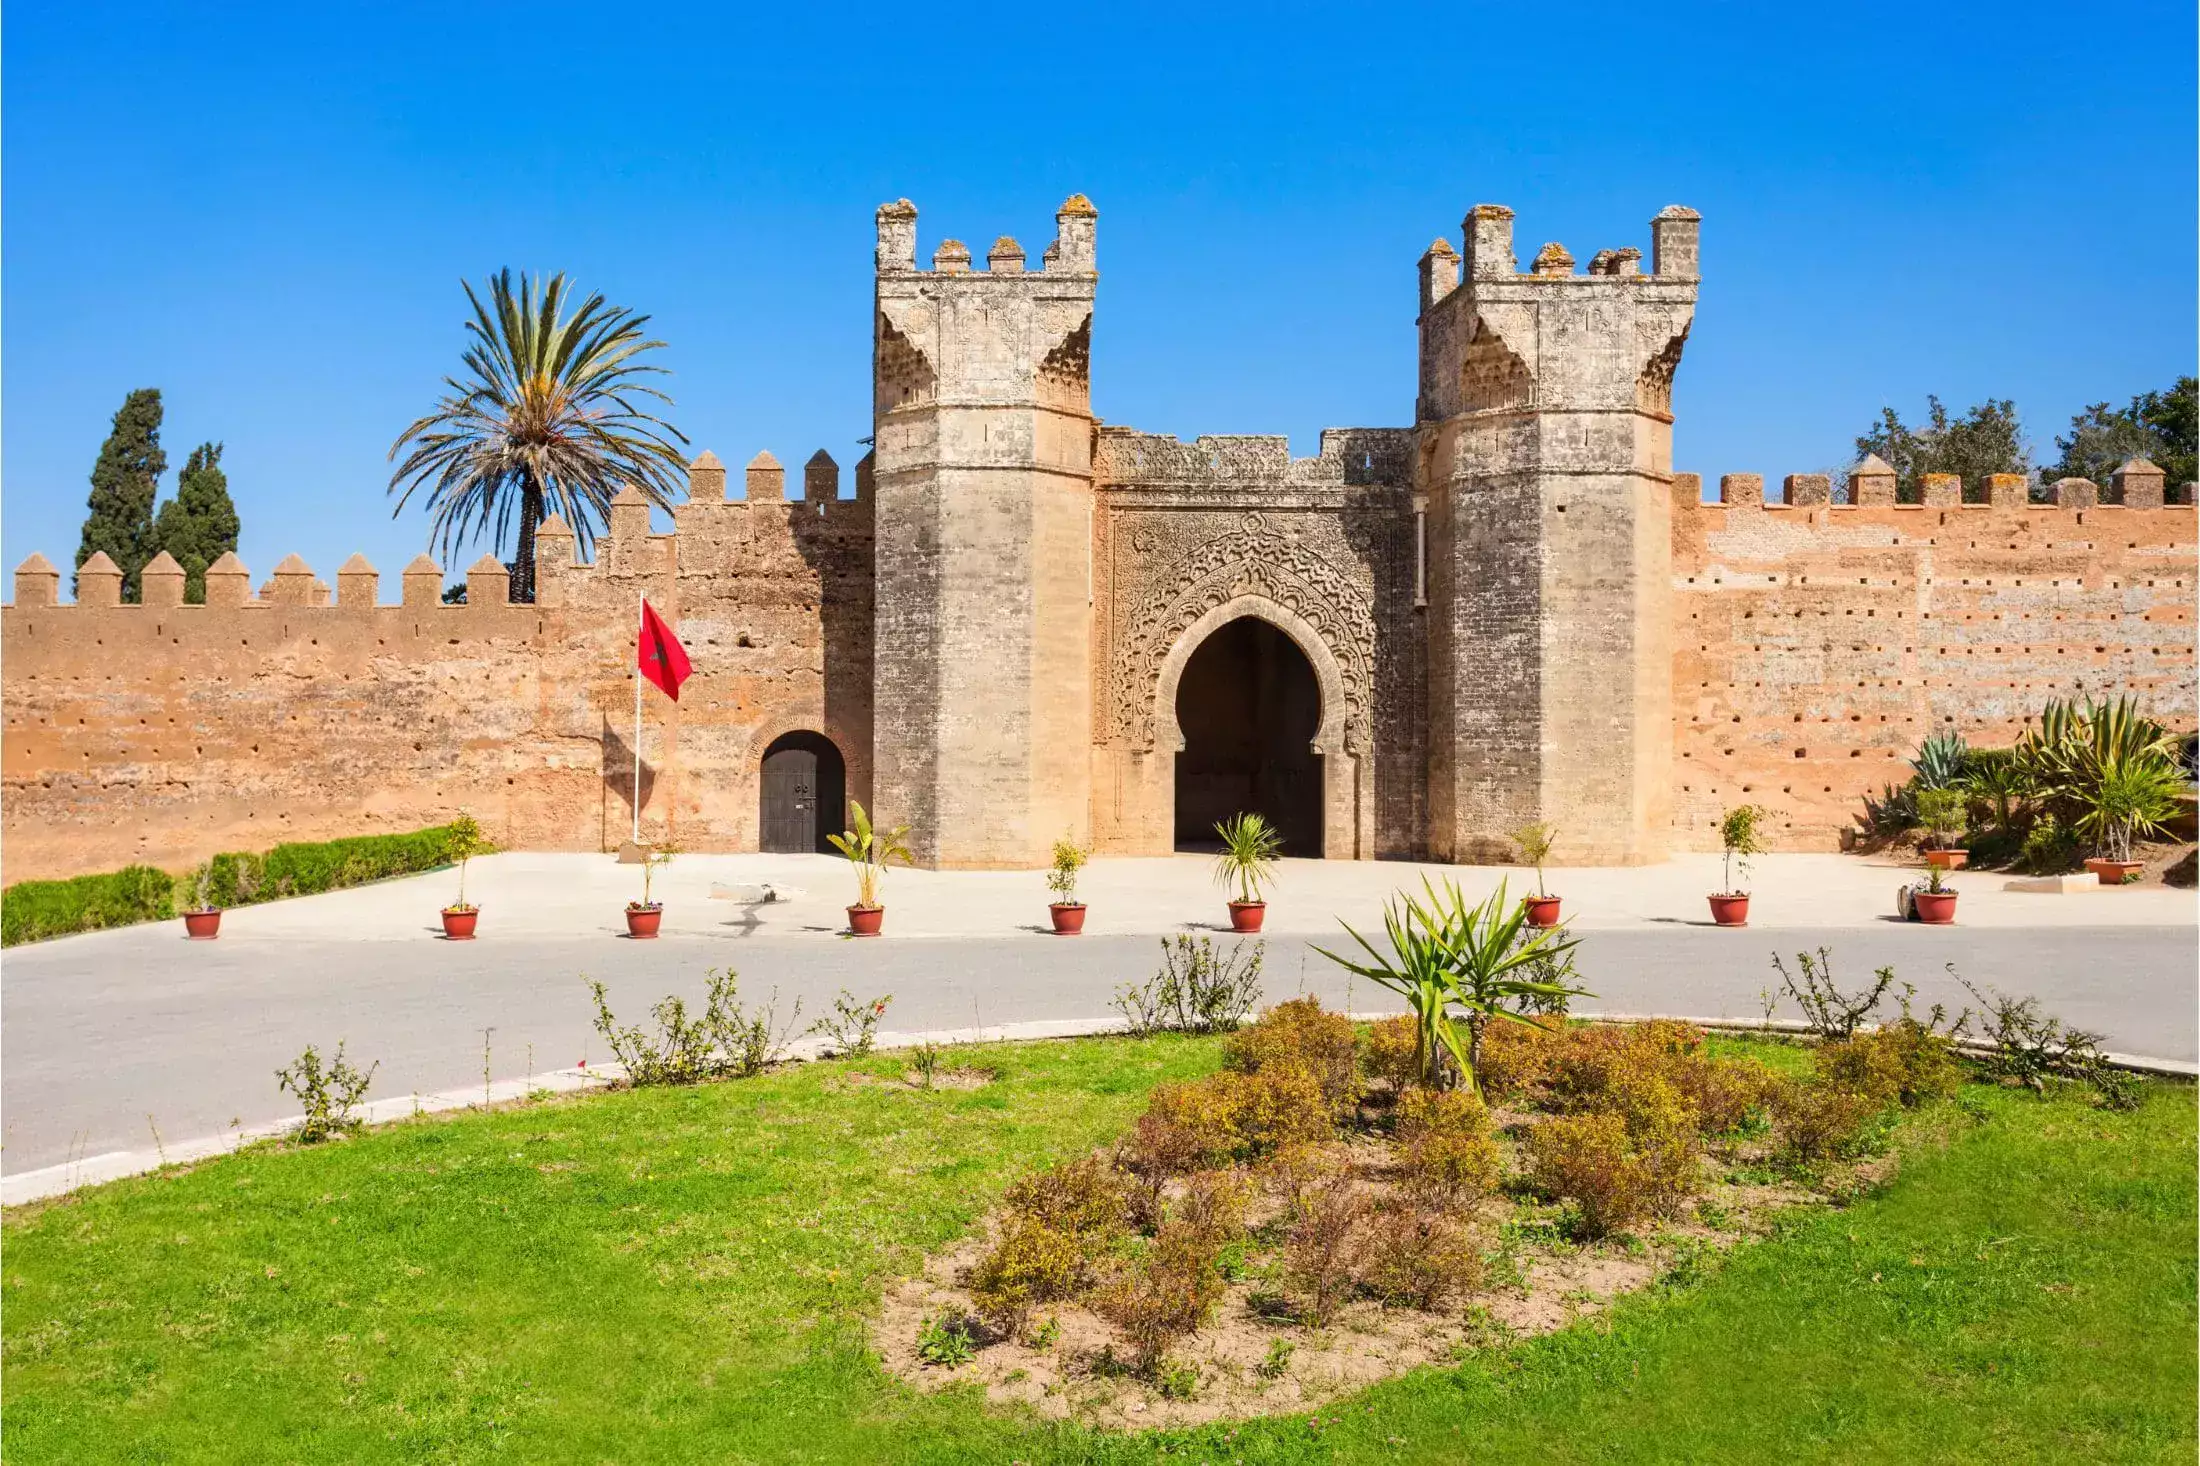 The Chellah in Rabat